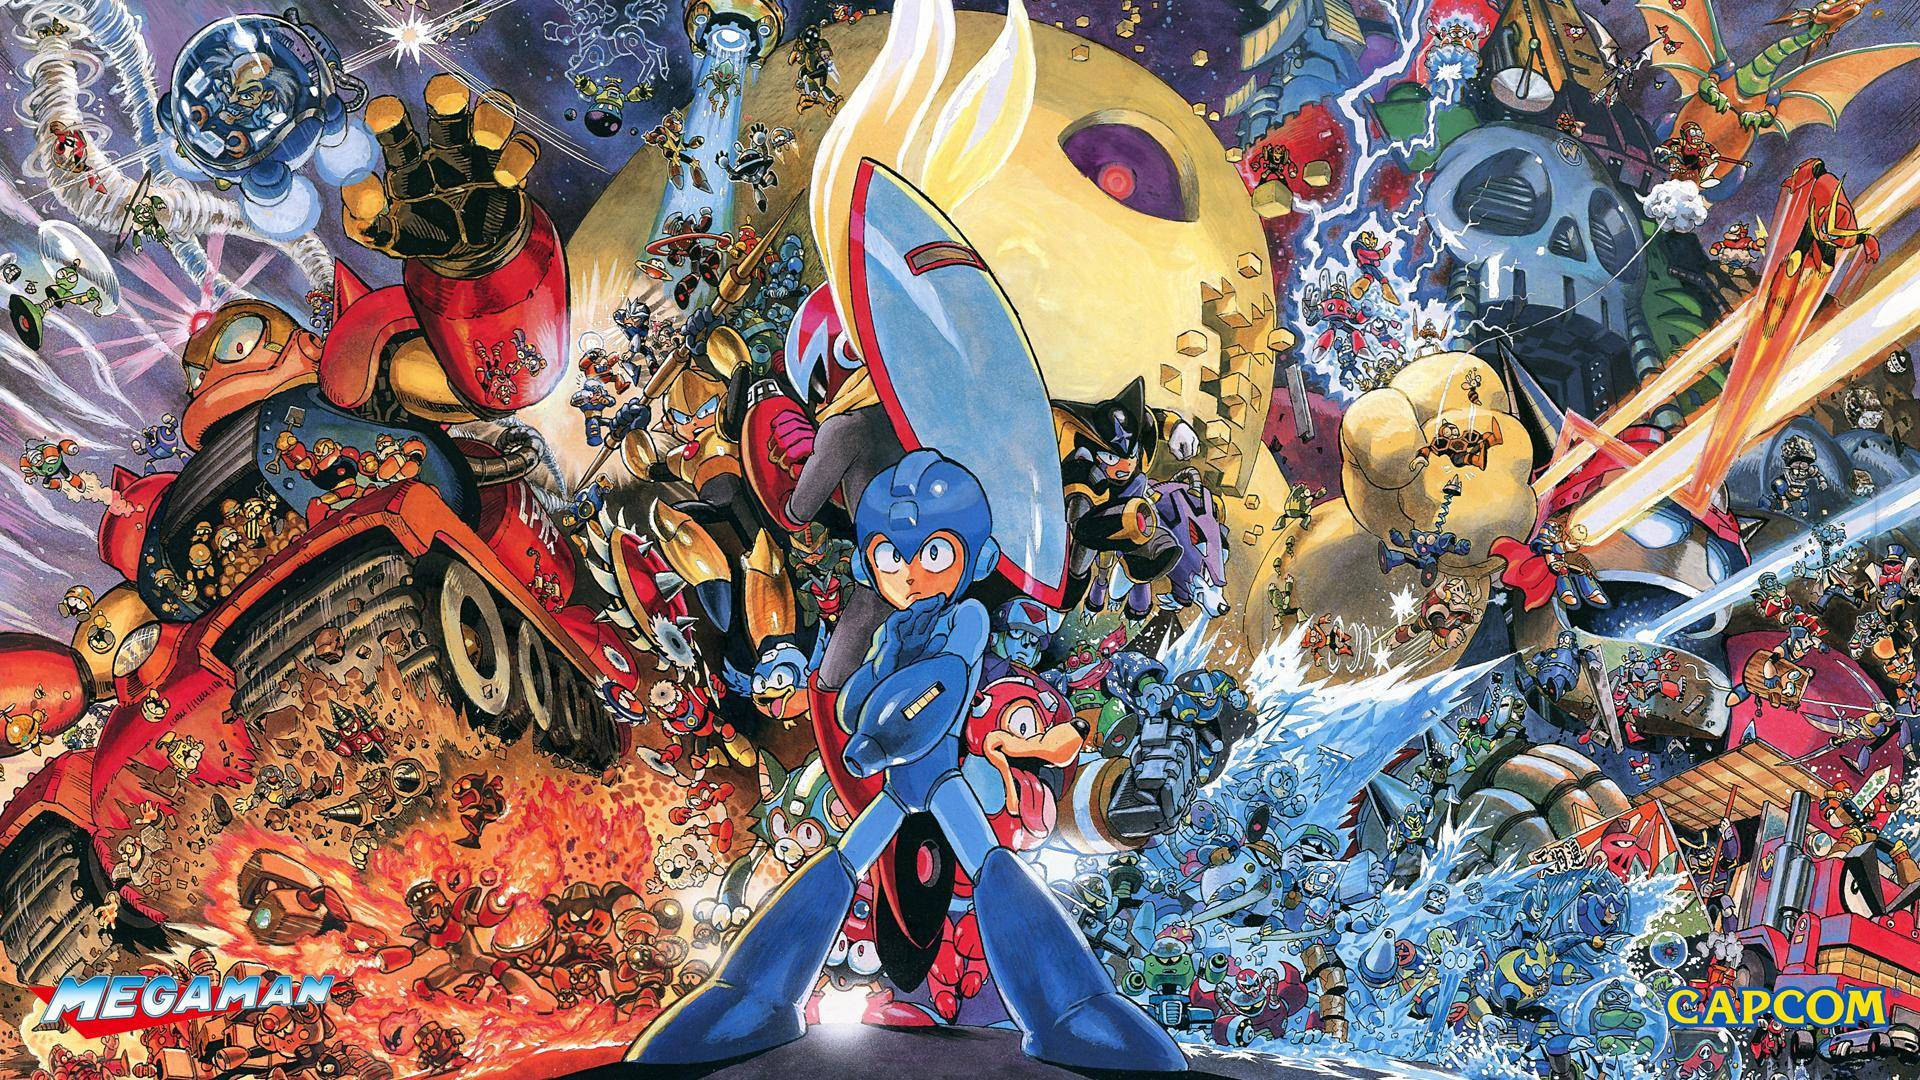 Capcom Mega Man Proto Man bakgrunn gir et utvalg av fargemuligheter og tilstedeværelsen av klassiske spillkarakterer. Wallpaper